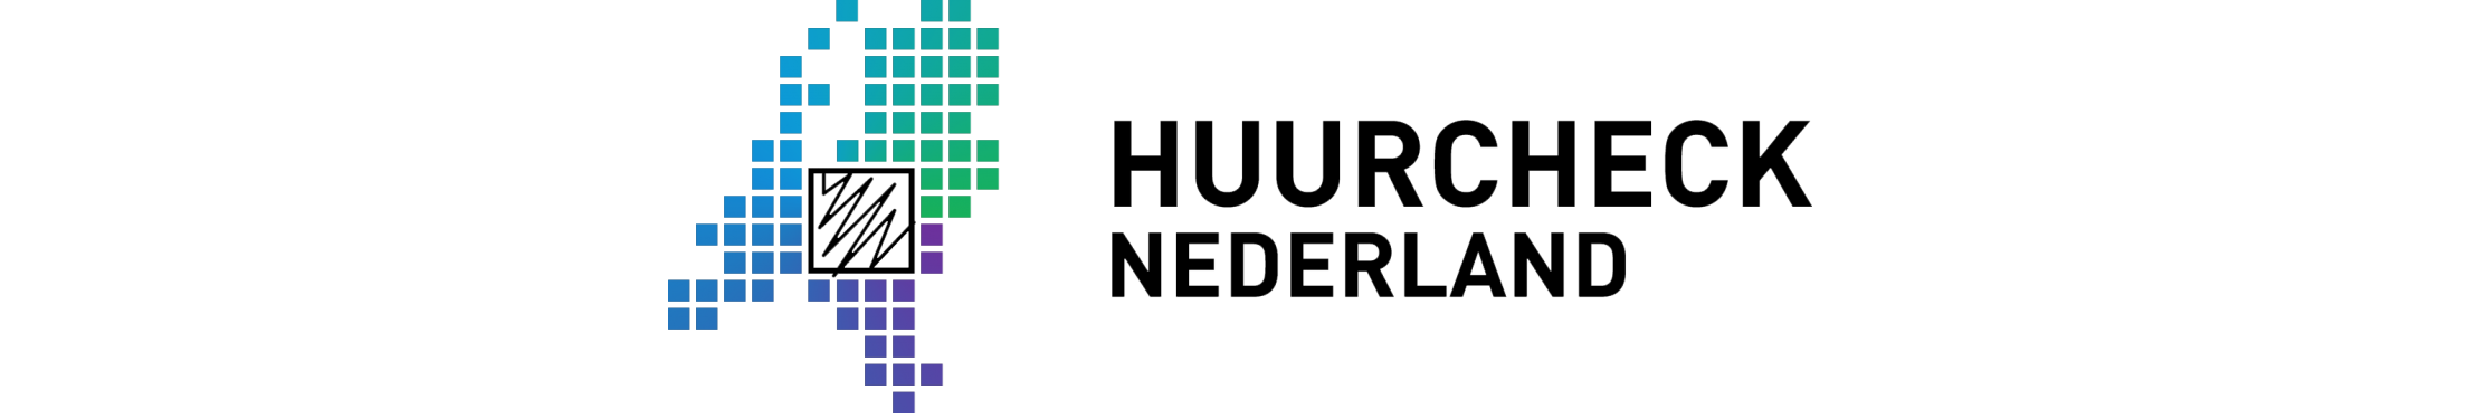 Huurcheck logo - ruim-01.png